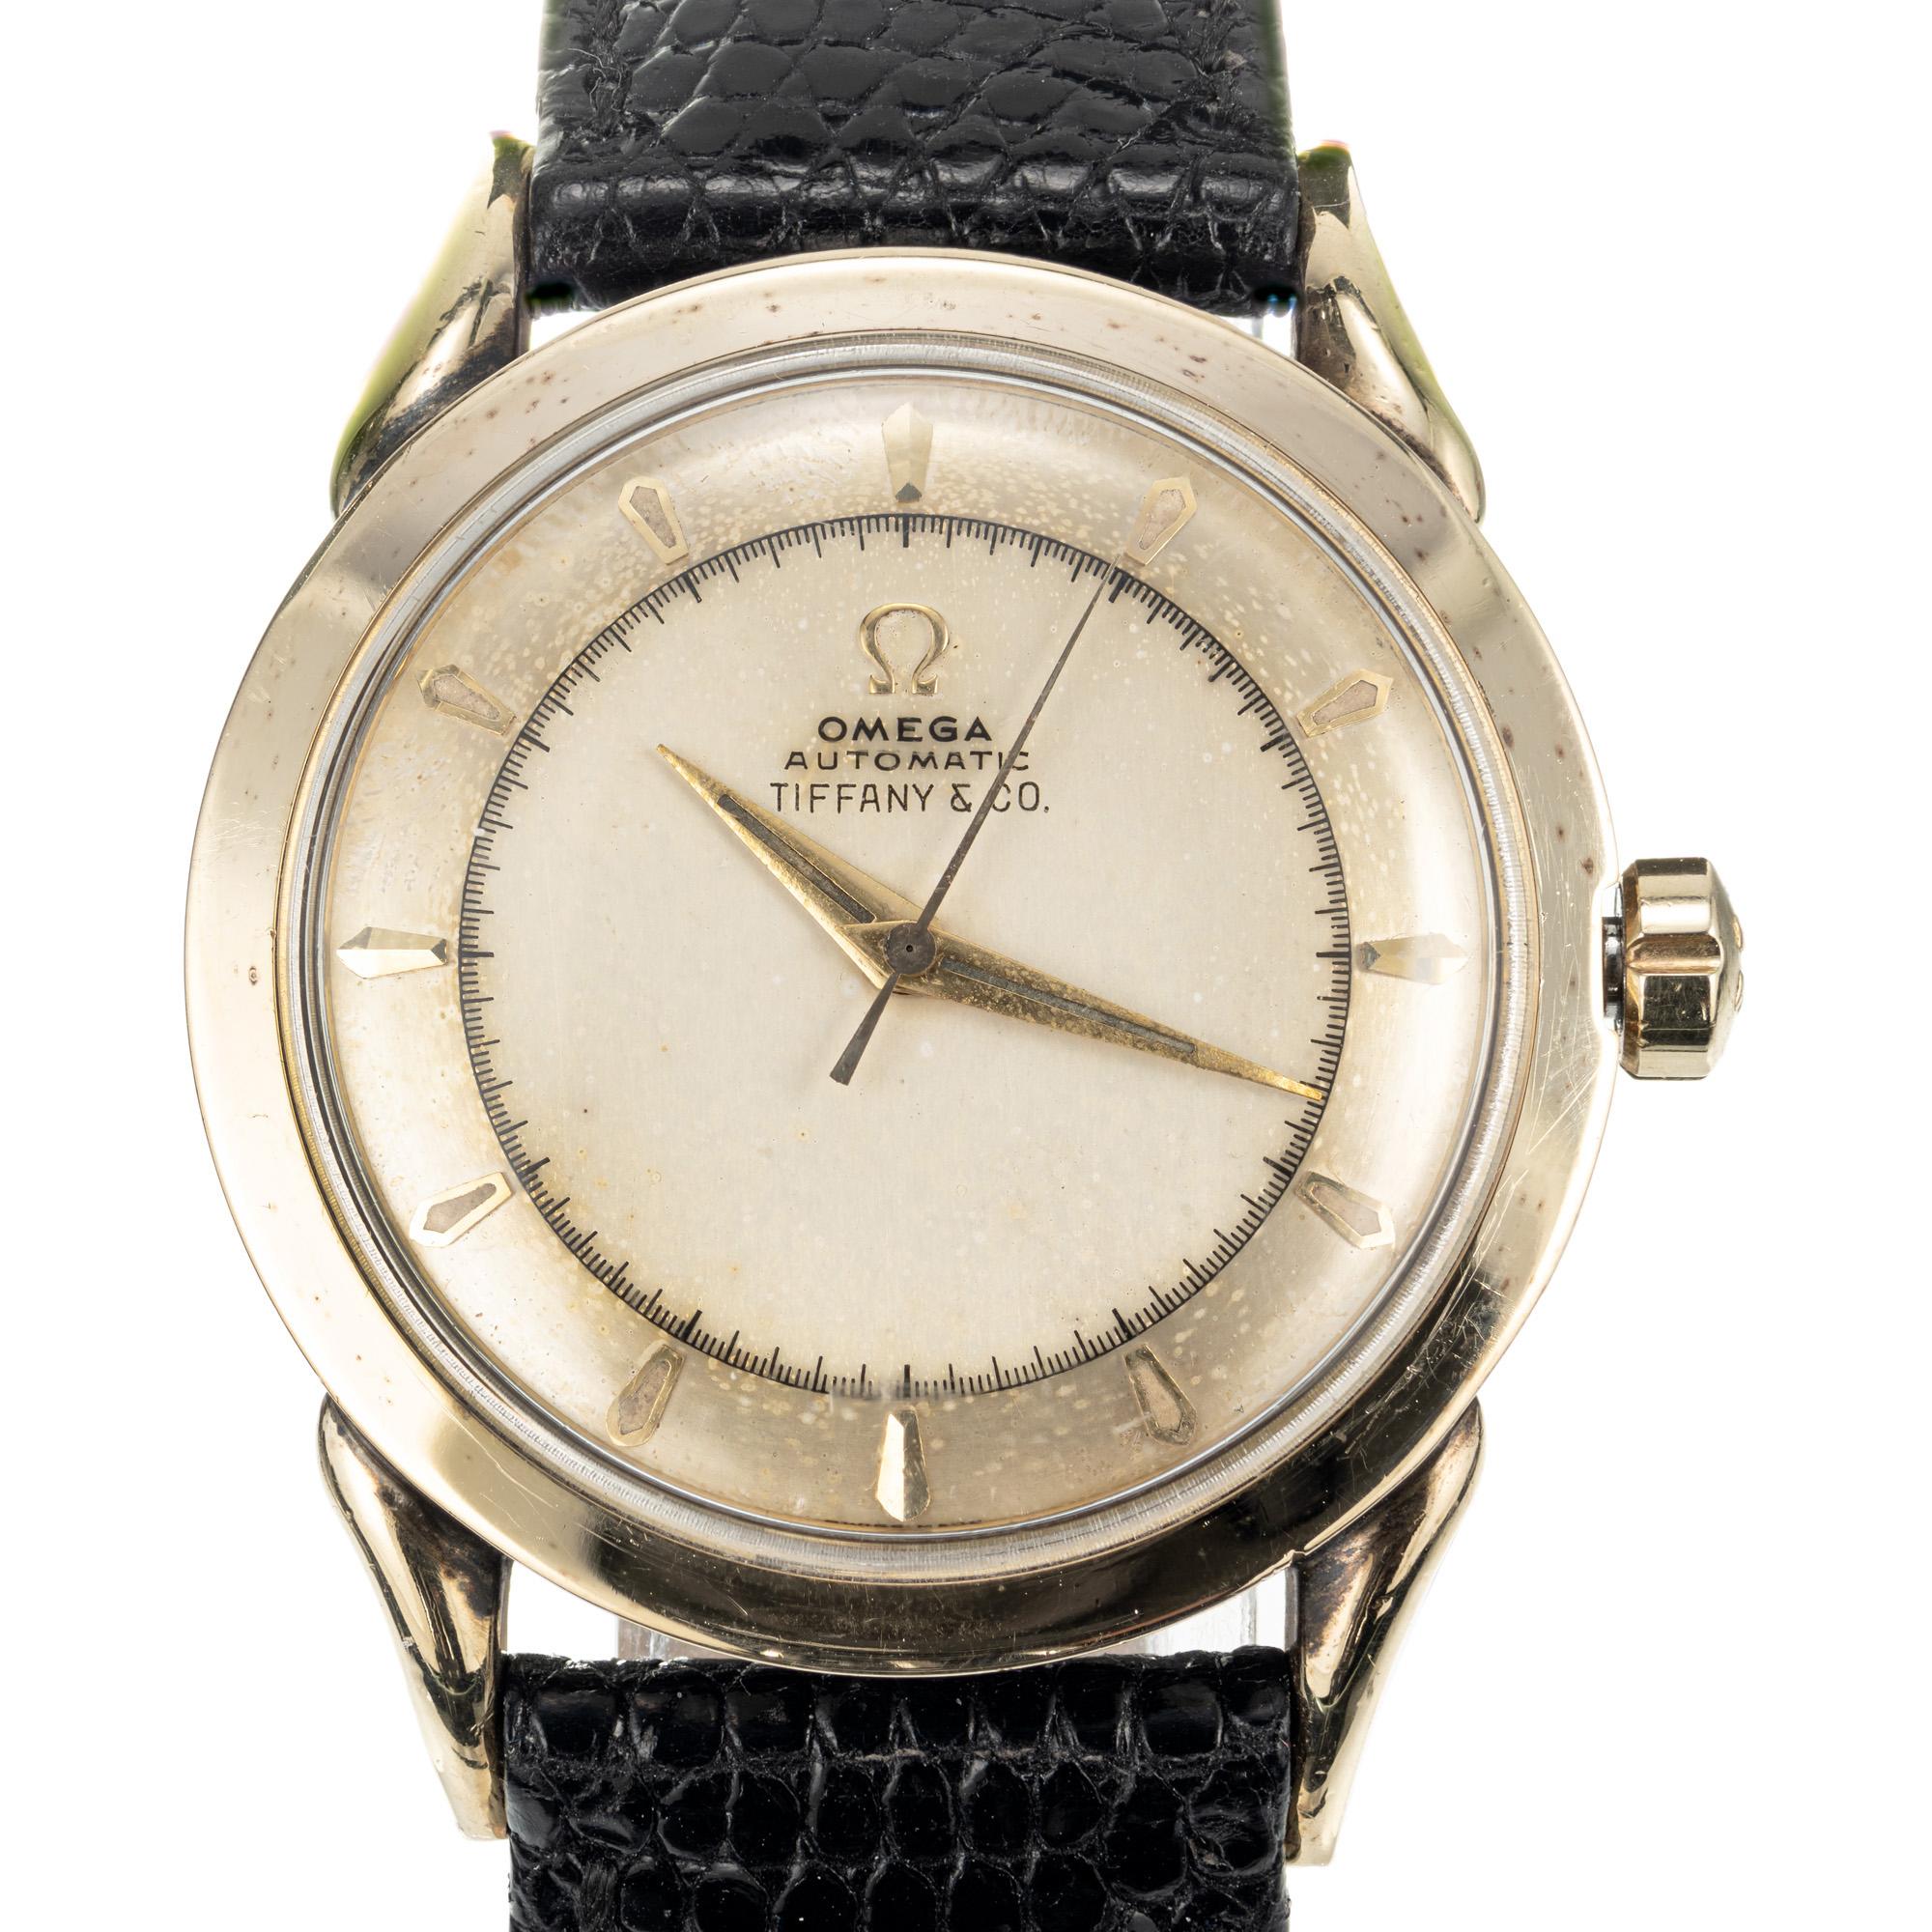 Omega Armbanduhr mit vergoldetem Gehäuse und Edelstahlboden, verkauft von Tiffany & Co,  Ref. 351, ca. 1960er Jahre, mit automatischem Stoßdämpferwerk. Lünette aus 14er Gelbgold und Boden aus Edelstahl.

Länge: 42,51 mm 
Breite: 33 mm 
40.0